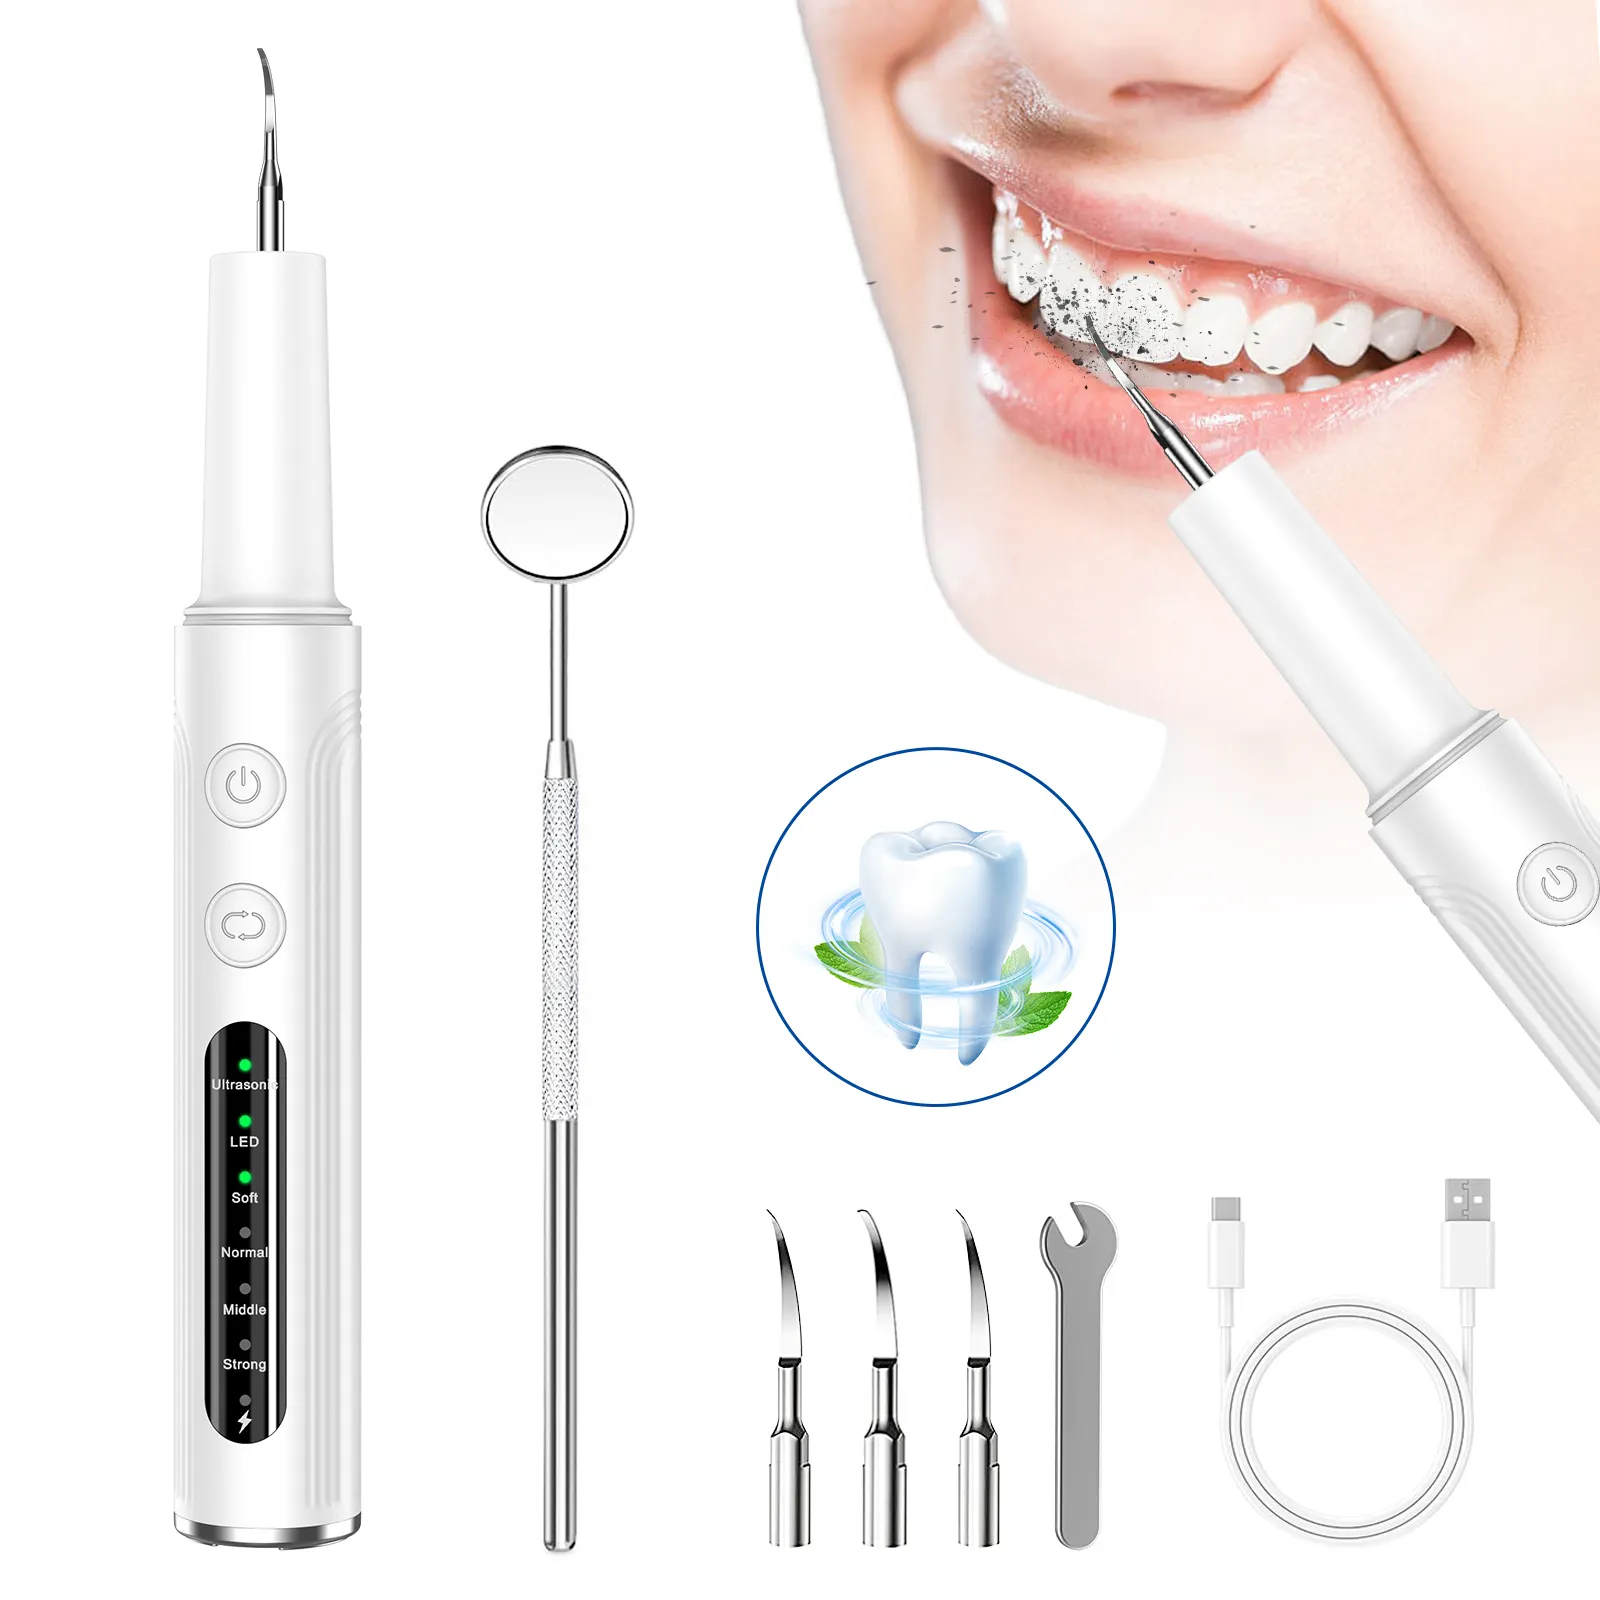 Limpiador Dental Limpiador de dientes Aparatos de cuidado bucal Limpiador de dientes ultrasónico dental Eliminador de placa para dientes